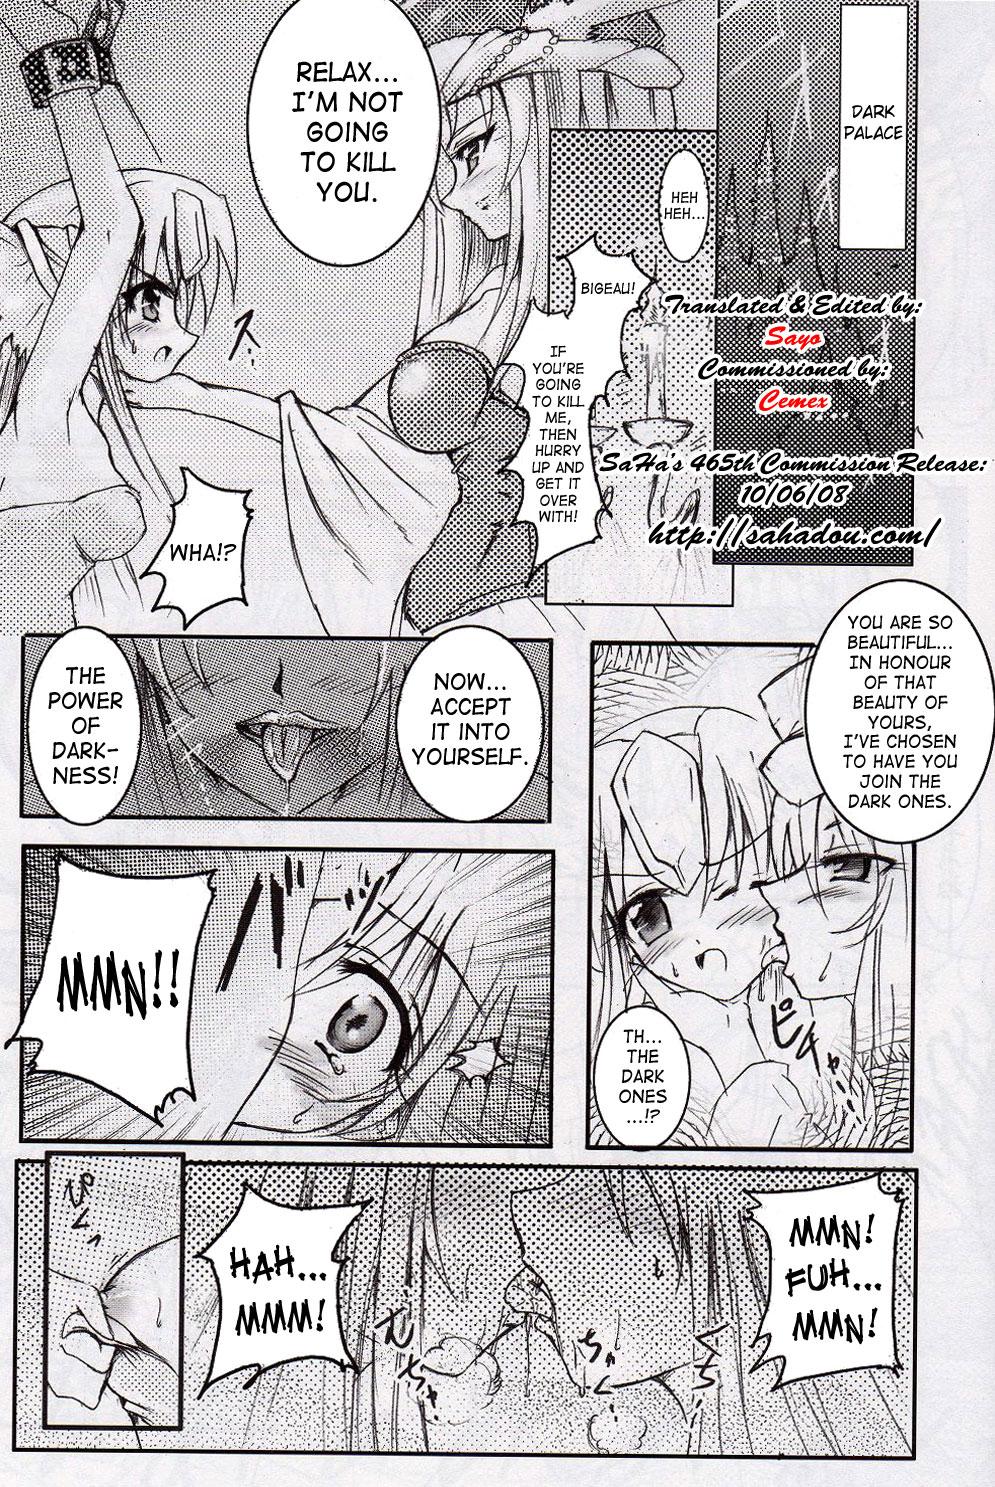 Hot Girls Getting Fucked Demon Wolf's Quickening - Seiken densetsu 3 Ass - Page 2